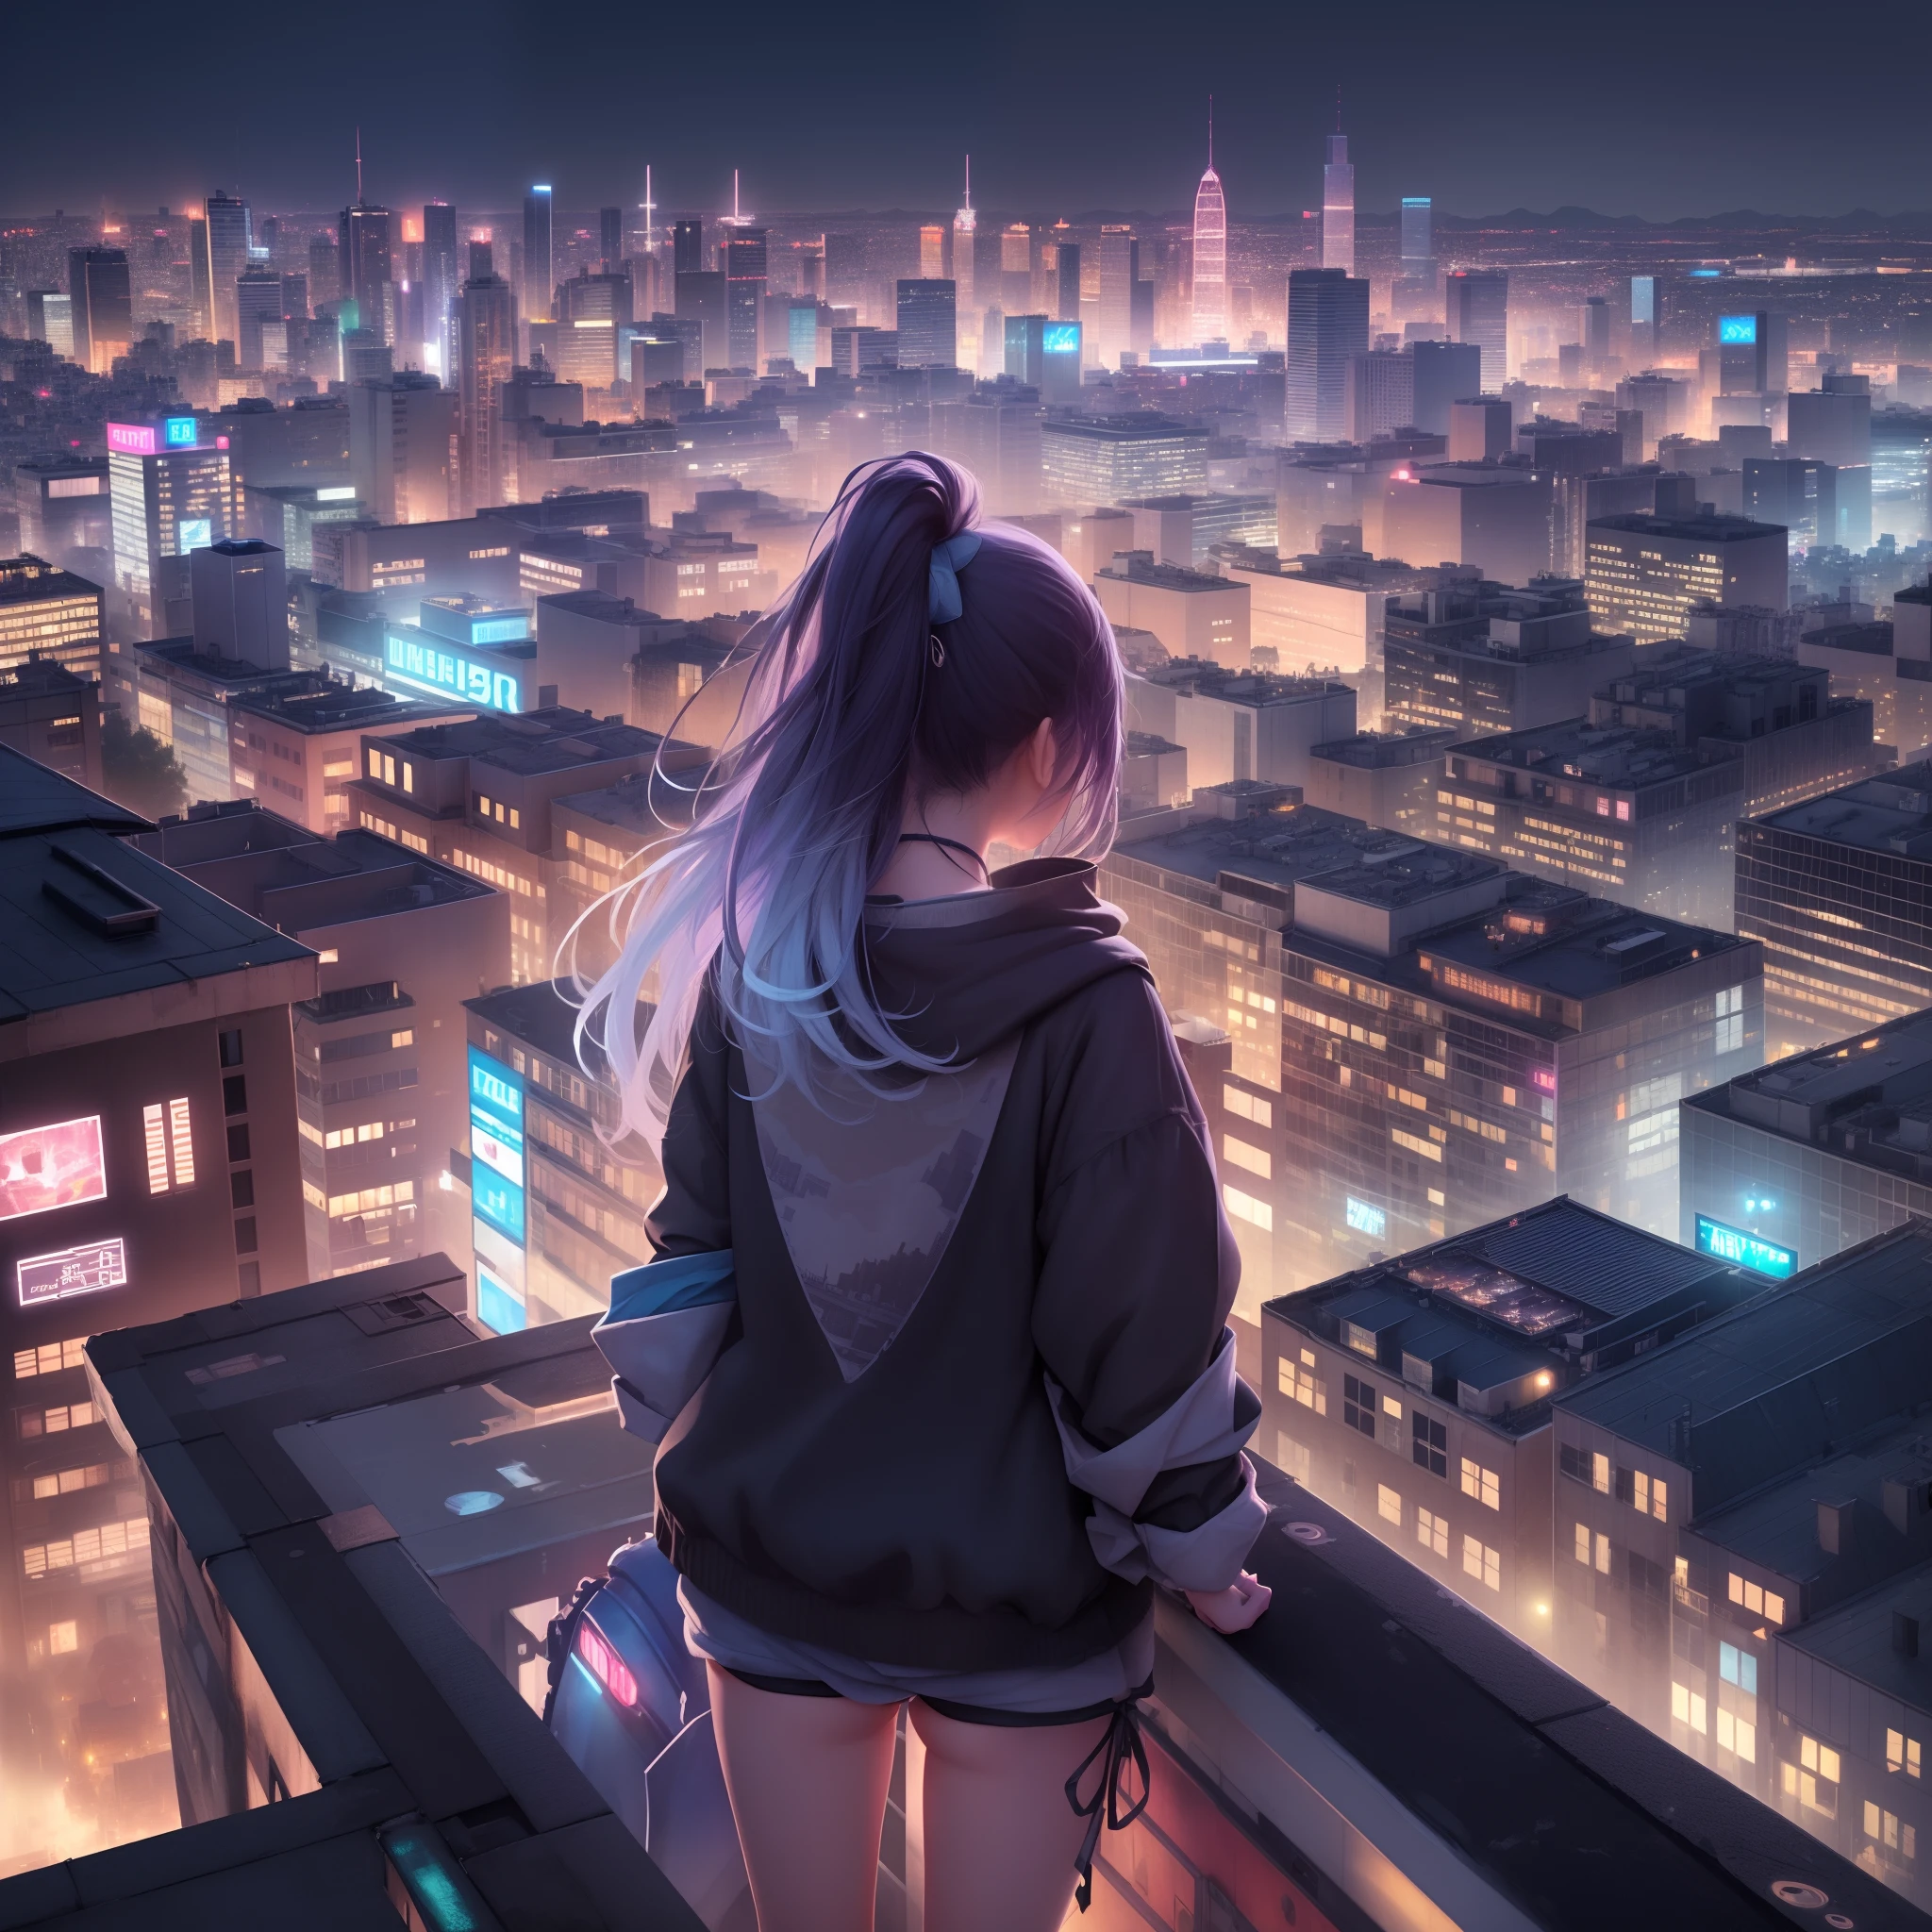 (真实纹理、8K)、從建築物屋頂俯視城市的女孩、(詳細的城市景觀、彩灯、后视图)、衣服和頭髮在風中飄揚